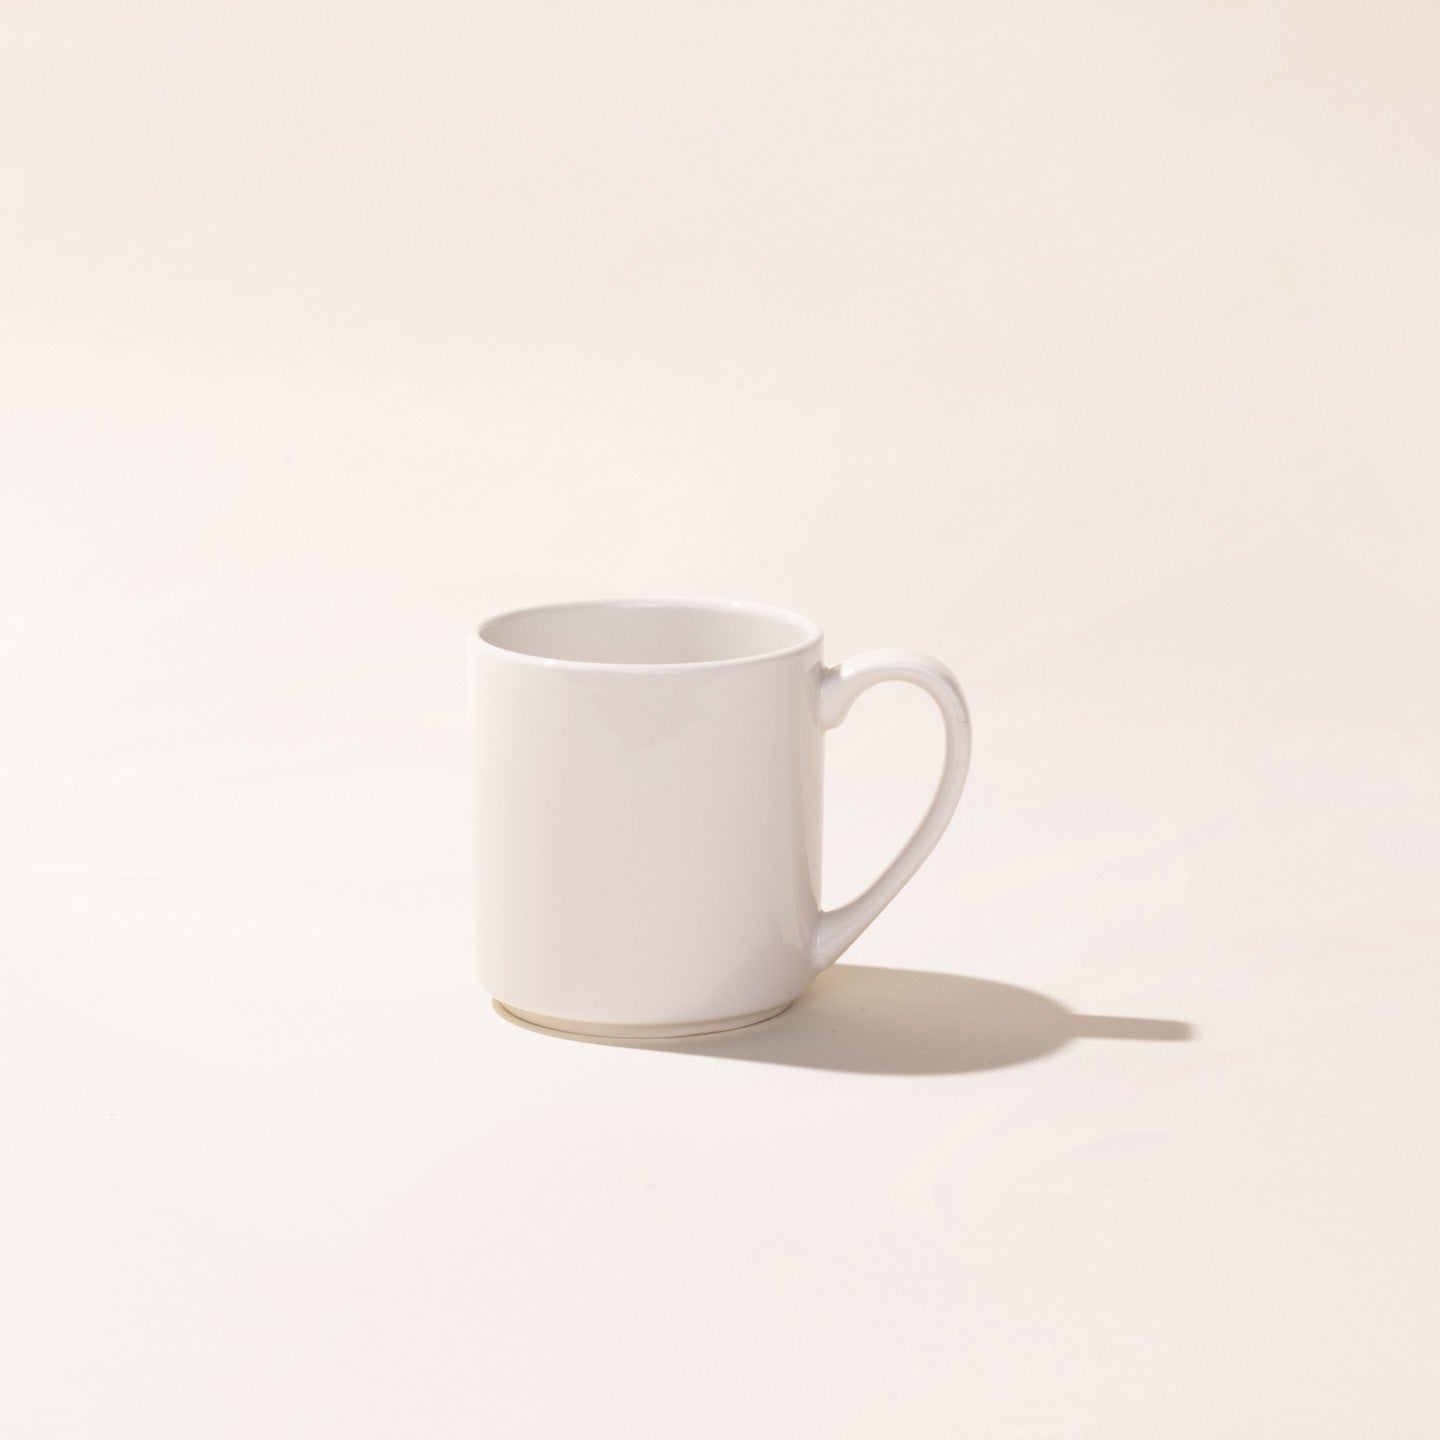 DOWAN Coffee Mugs, Black Coffee Mugs Set of 6, 16 oz Algeria